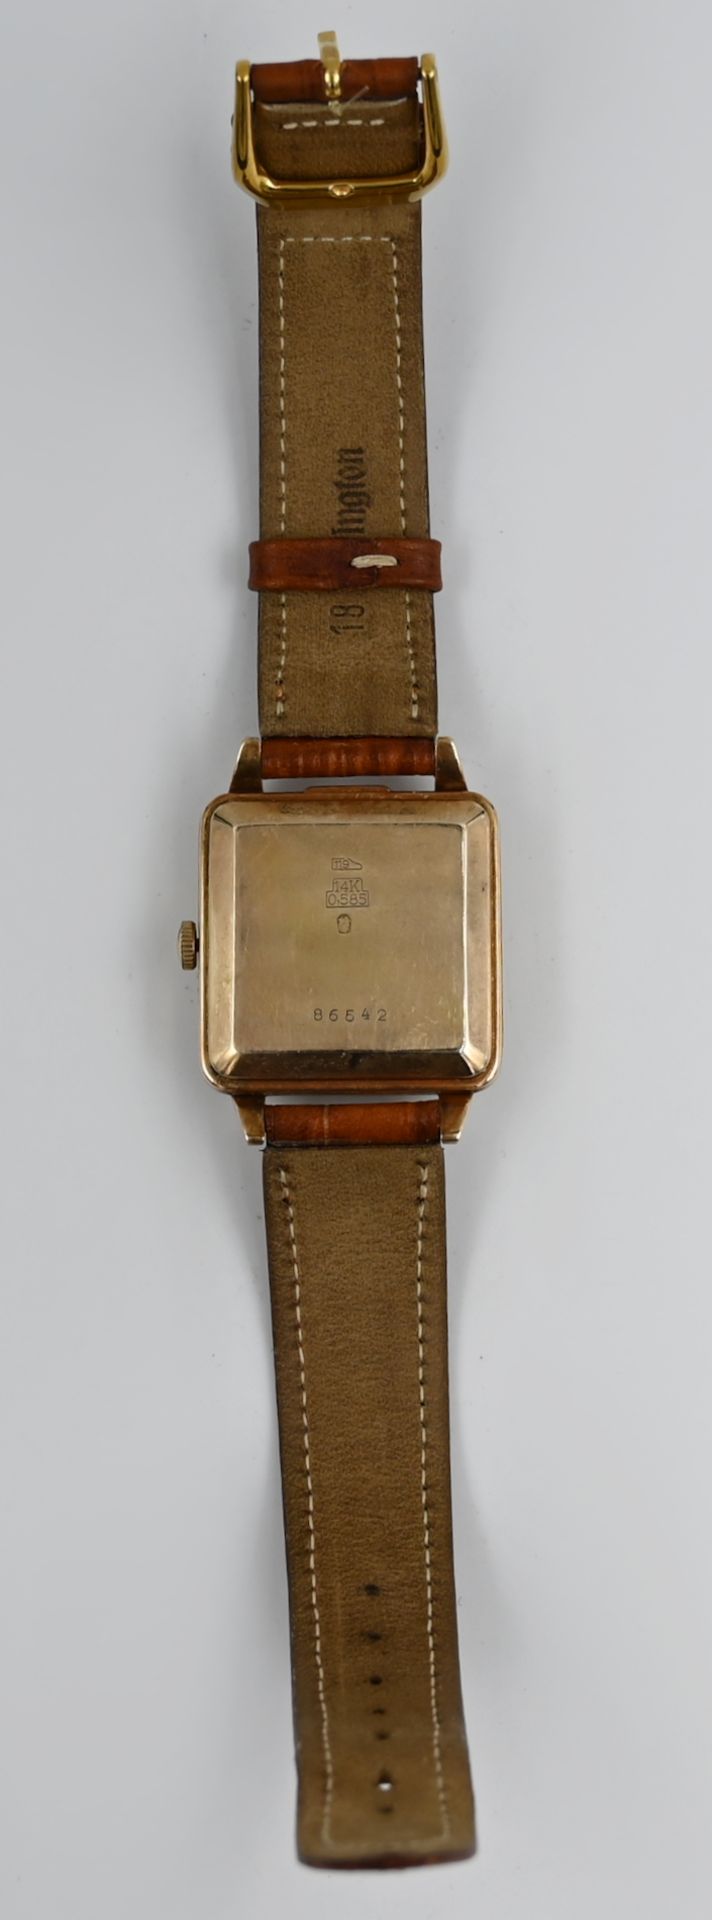 1 Armbanduhr ZENTRA, Gehäuse RG 14ct., Lederband ergänzt, wohl Automatik, Uhr läuft an, Asp./Gsp. - Image 2 of 2